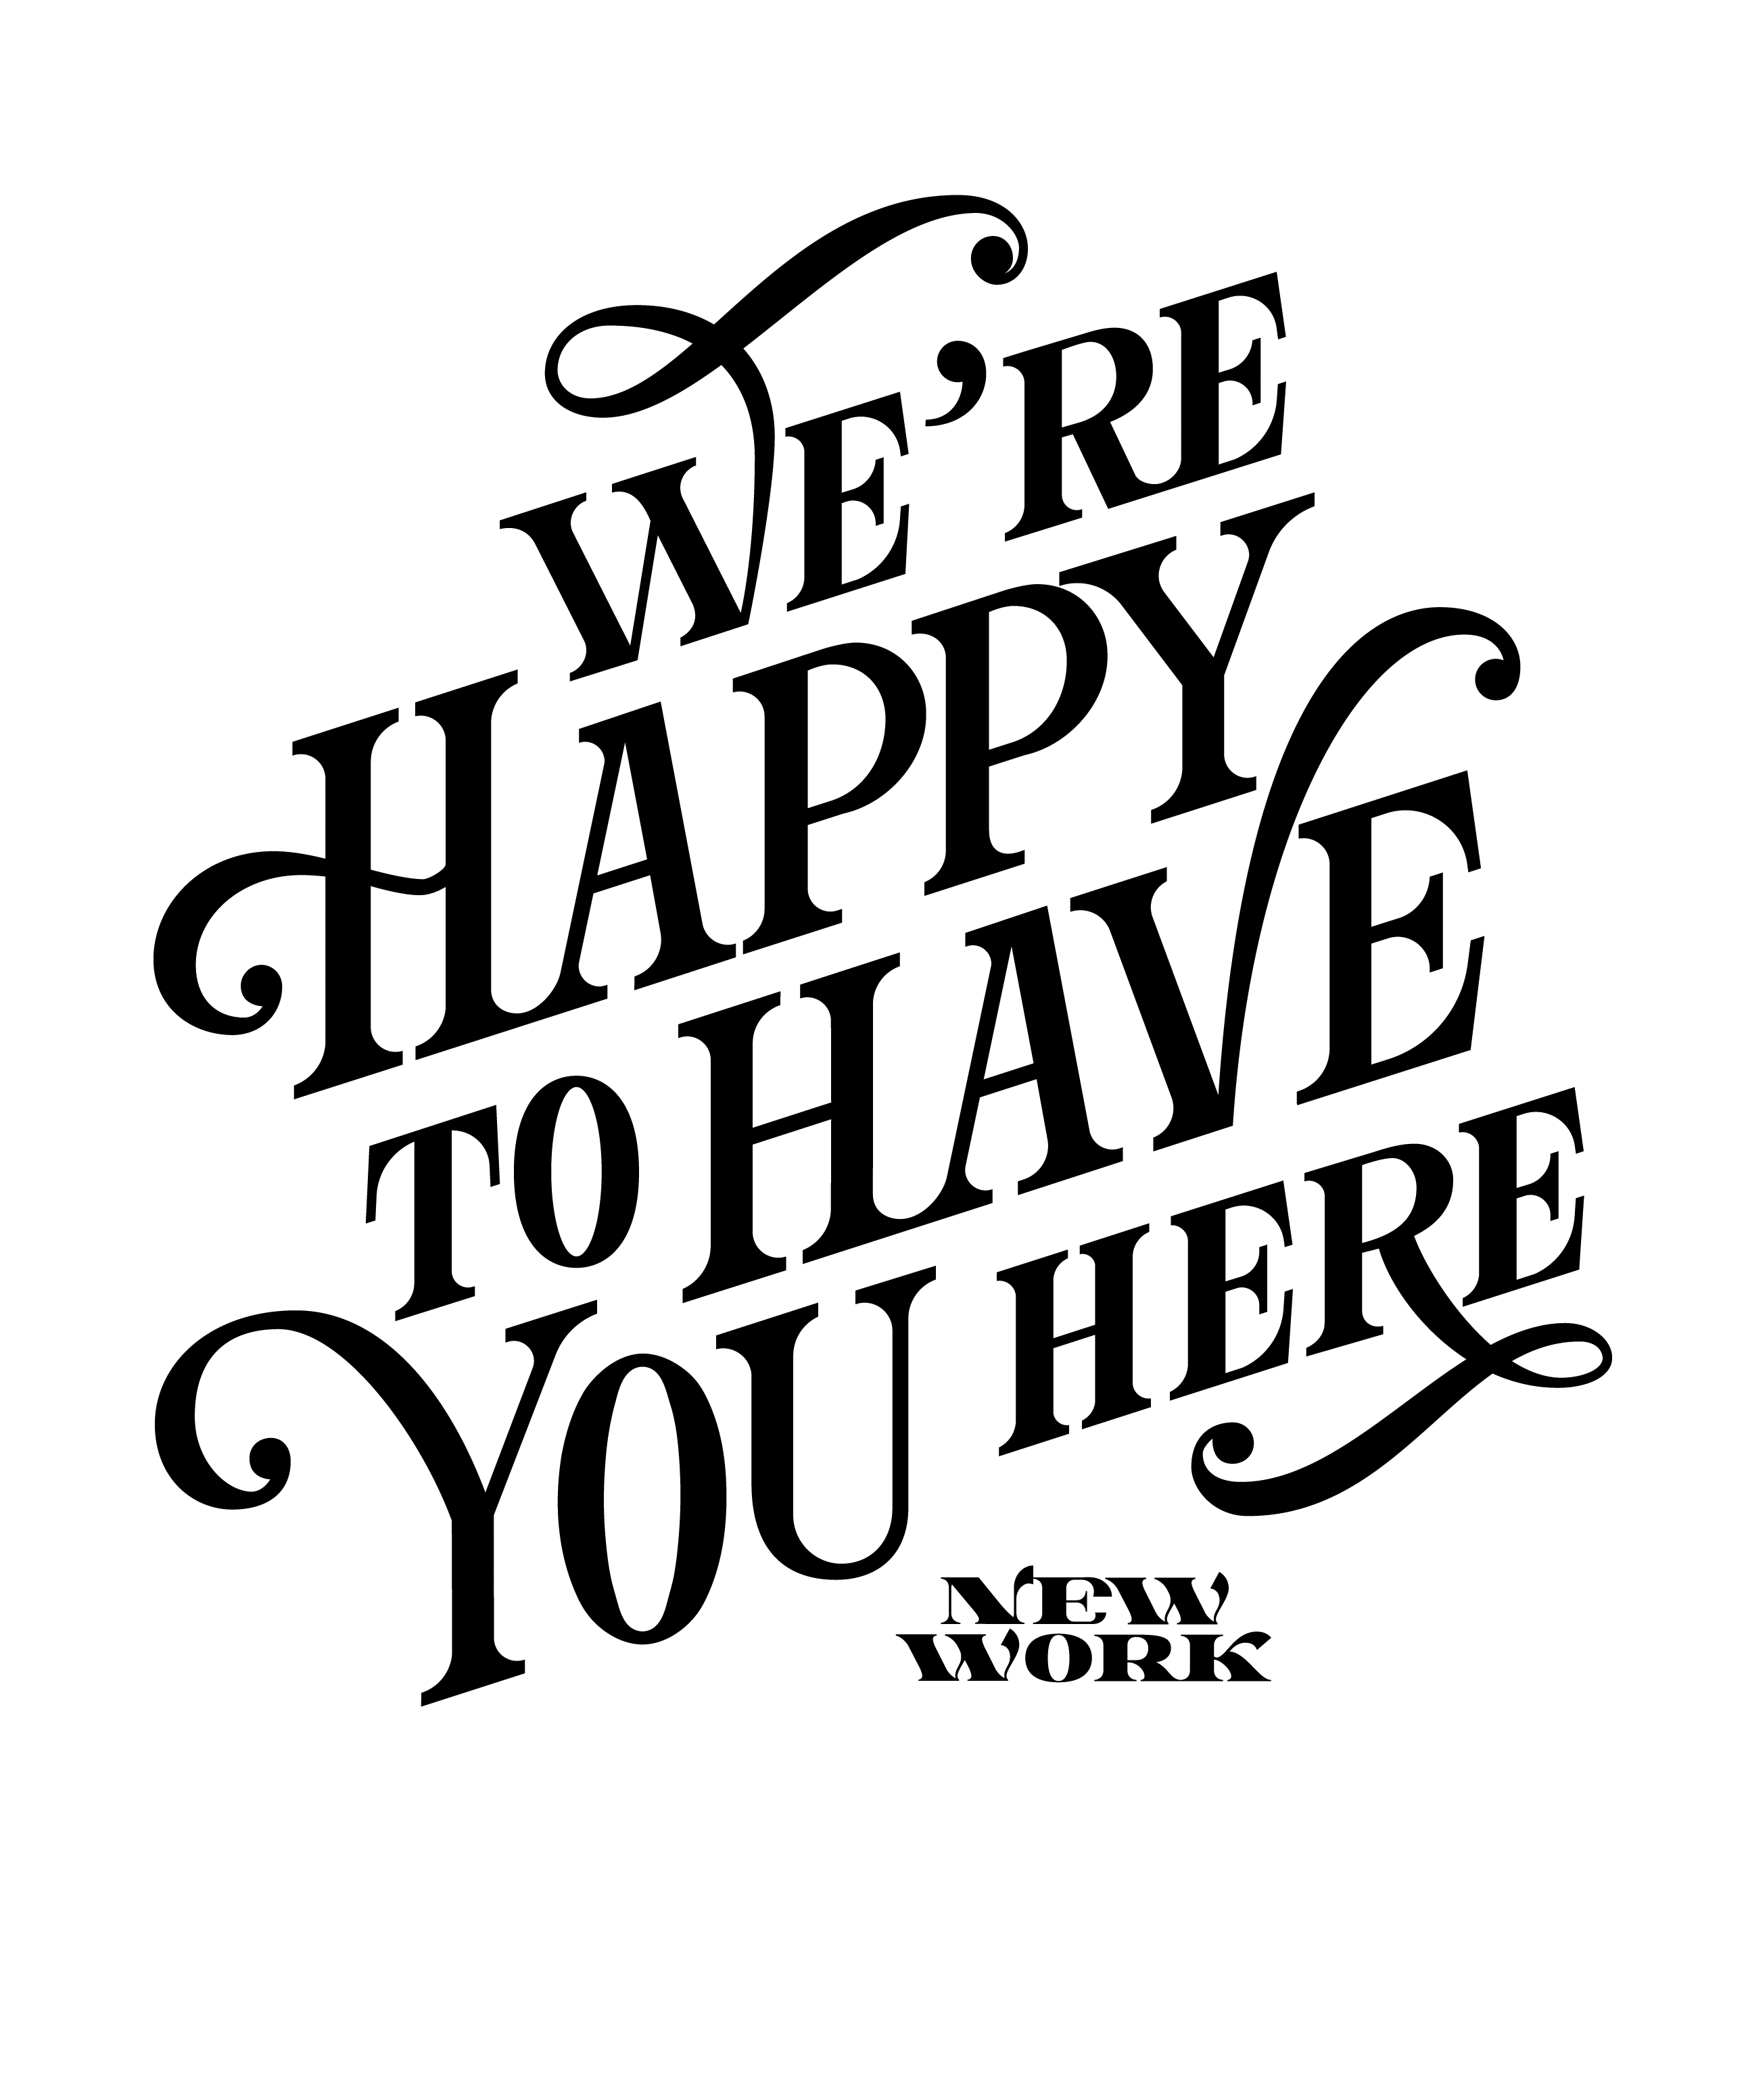 Ein Schriftzug (schwarz auf weiß) mit dem geletterten Wortlaut: “We’re happy to have you here” (Wir freuen uns, dass Du hier bist).